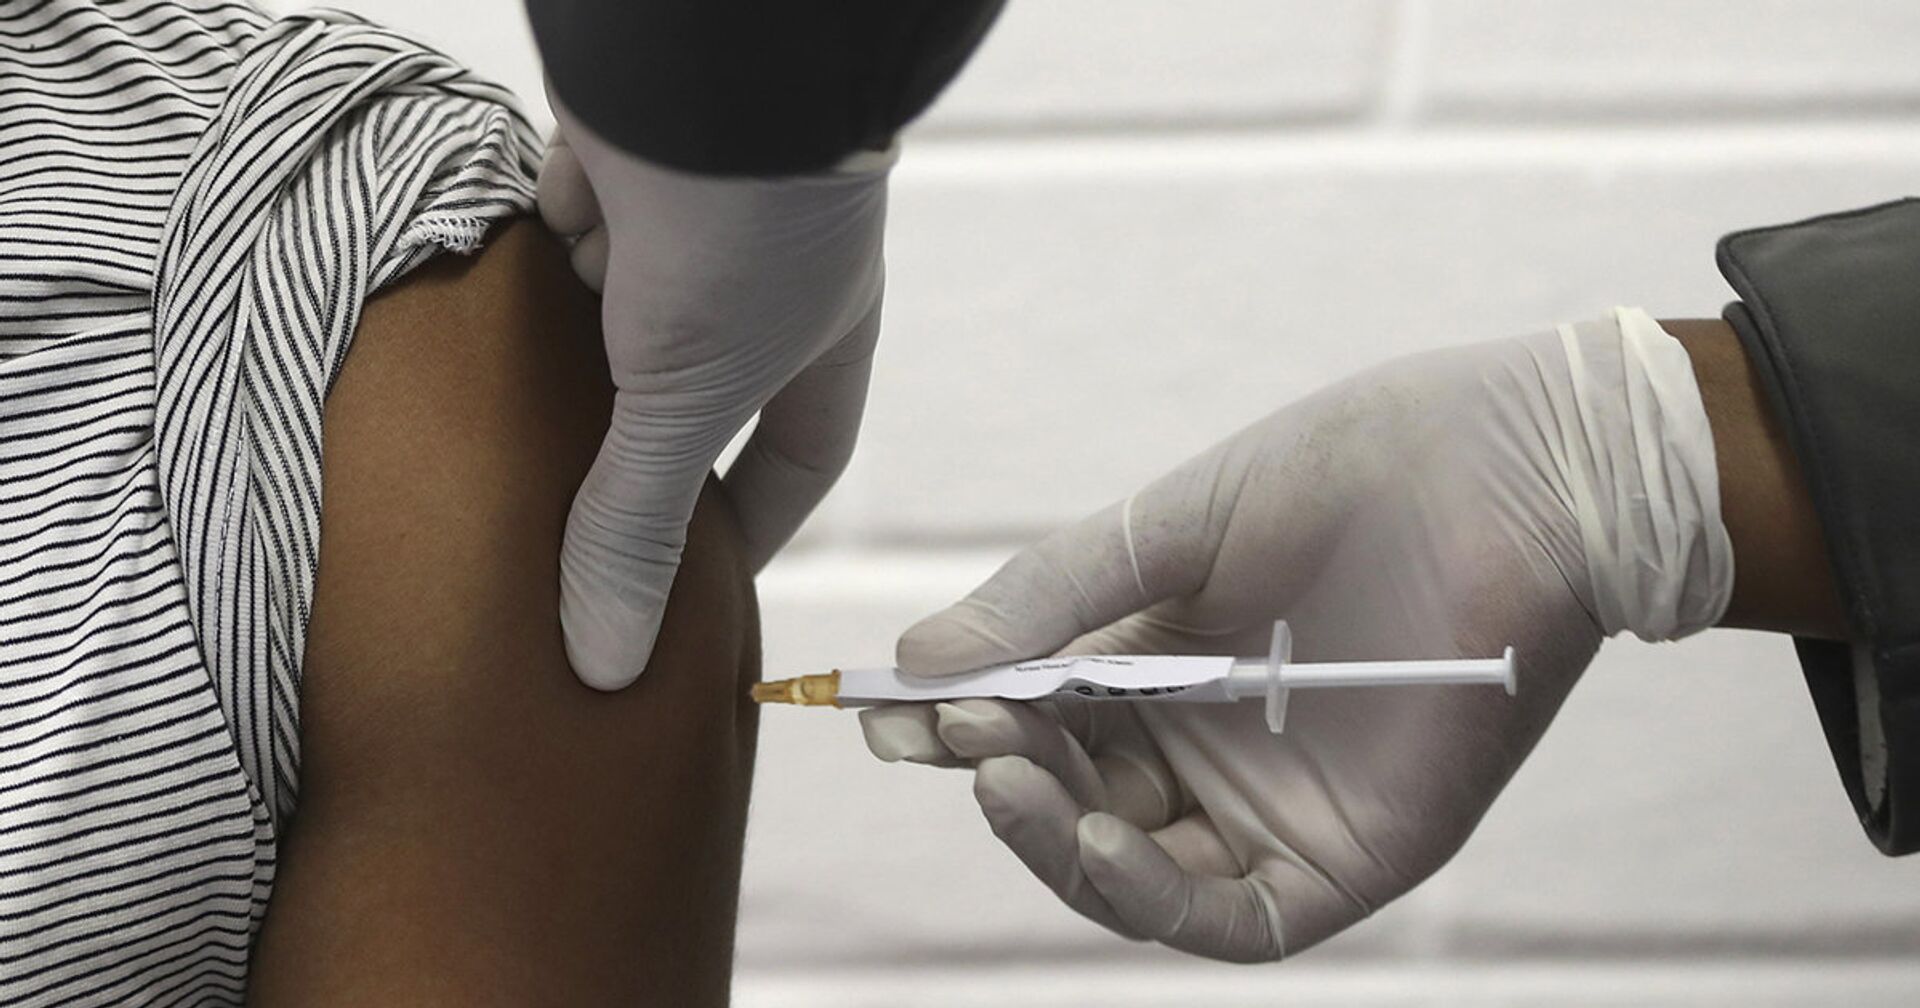 Доброволец получает вакцину от коронавируса в Йоханнесбурге - ИноСМИ, 1920, 03.02.2021